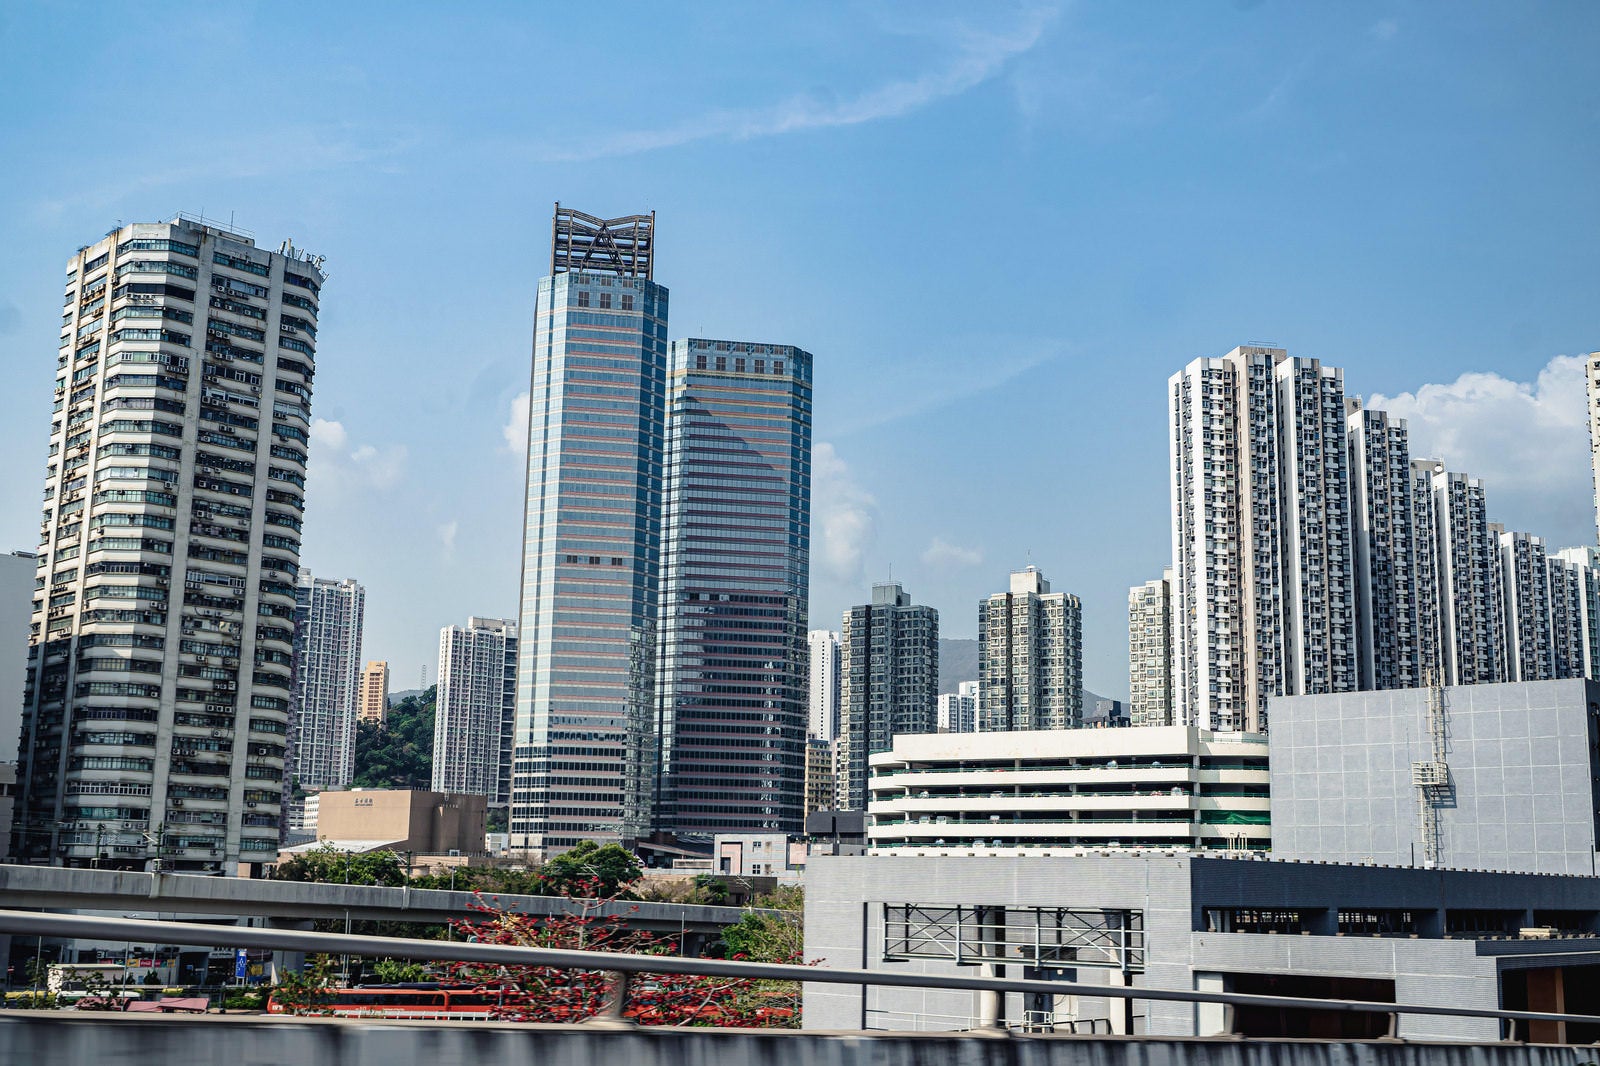 「高速道路から見える香港のオフィスビルと高層マンション」の写真